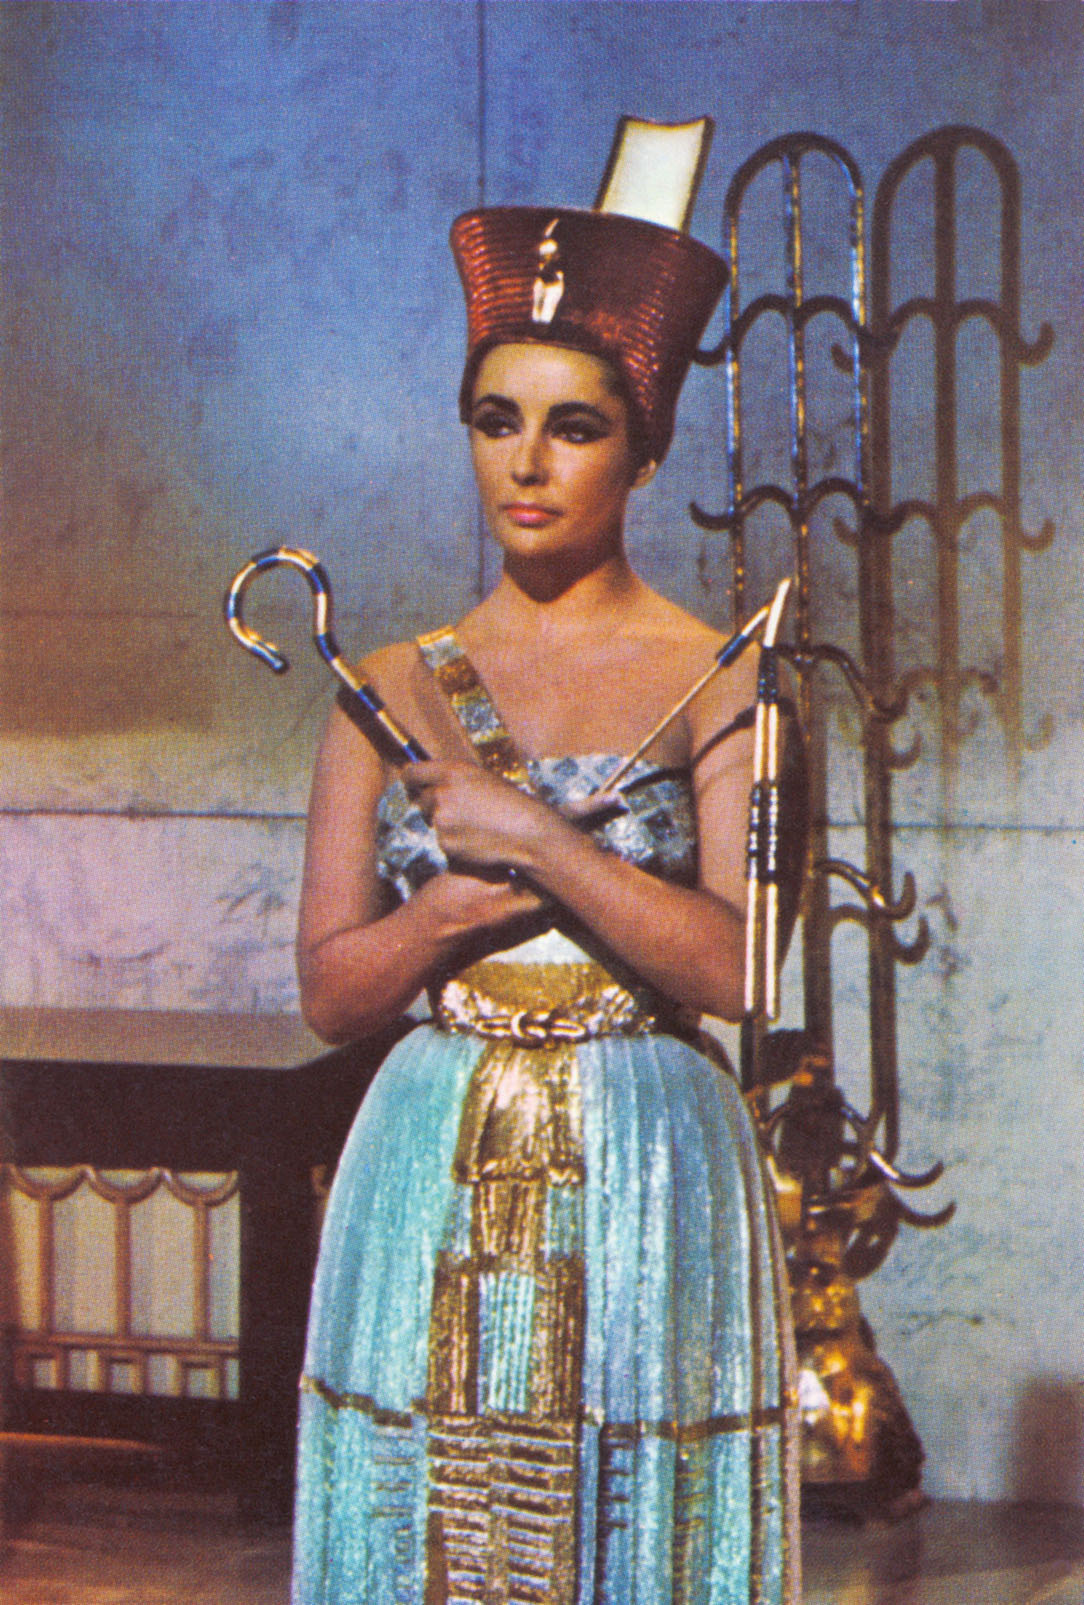 Η Ελίζαμπεθ Τέιλορ στα γυρίσματα της ταινίας Cleopatra, 1962 © Keystone Features/Getty Images/Ideal Image